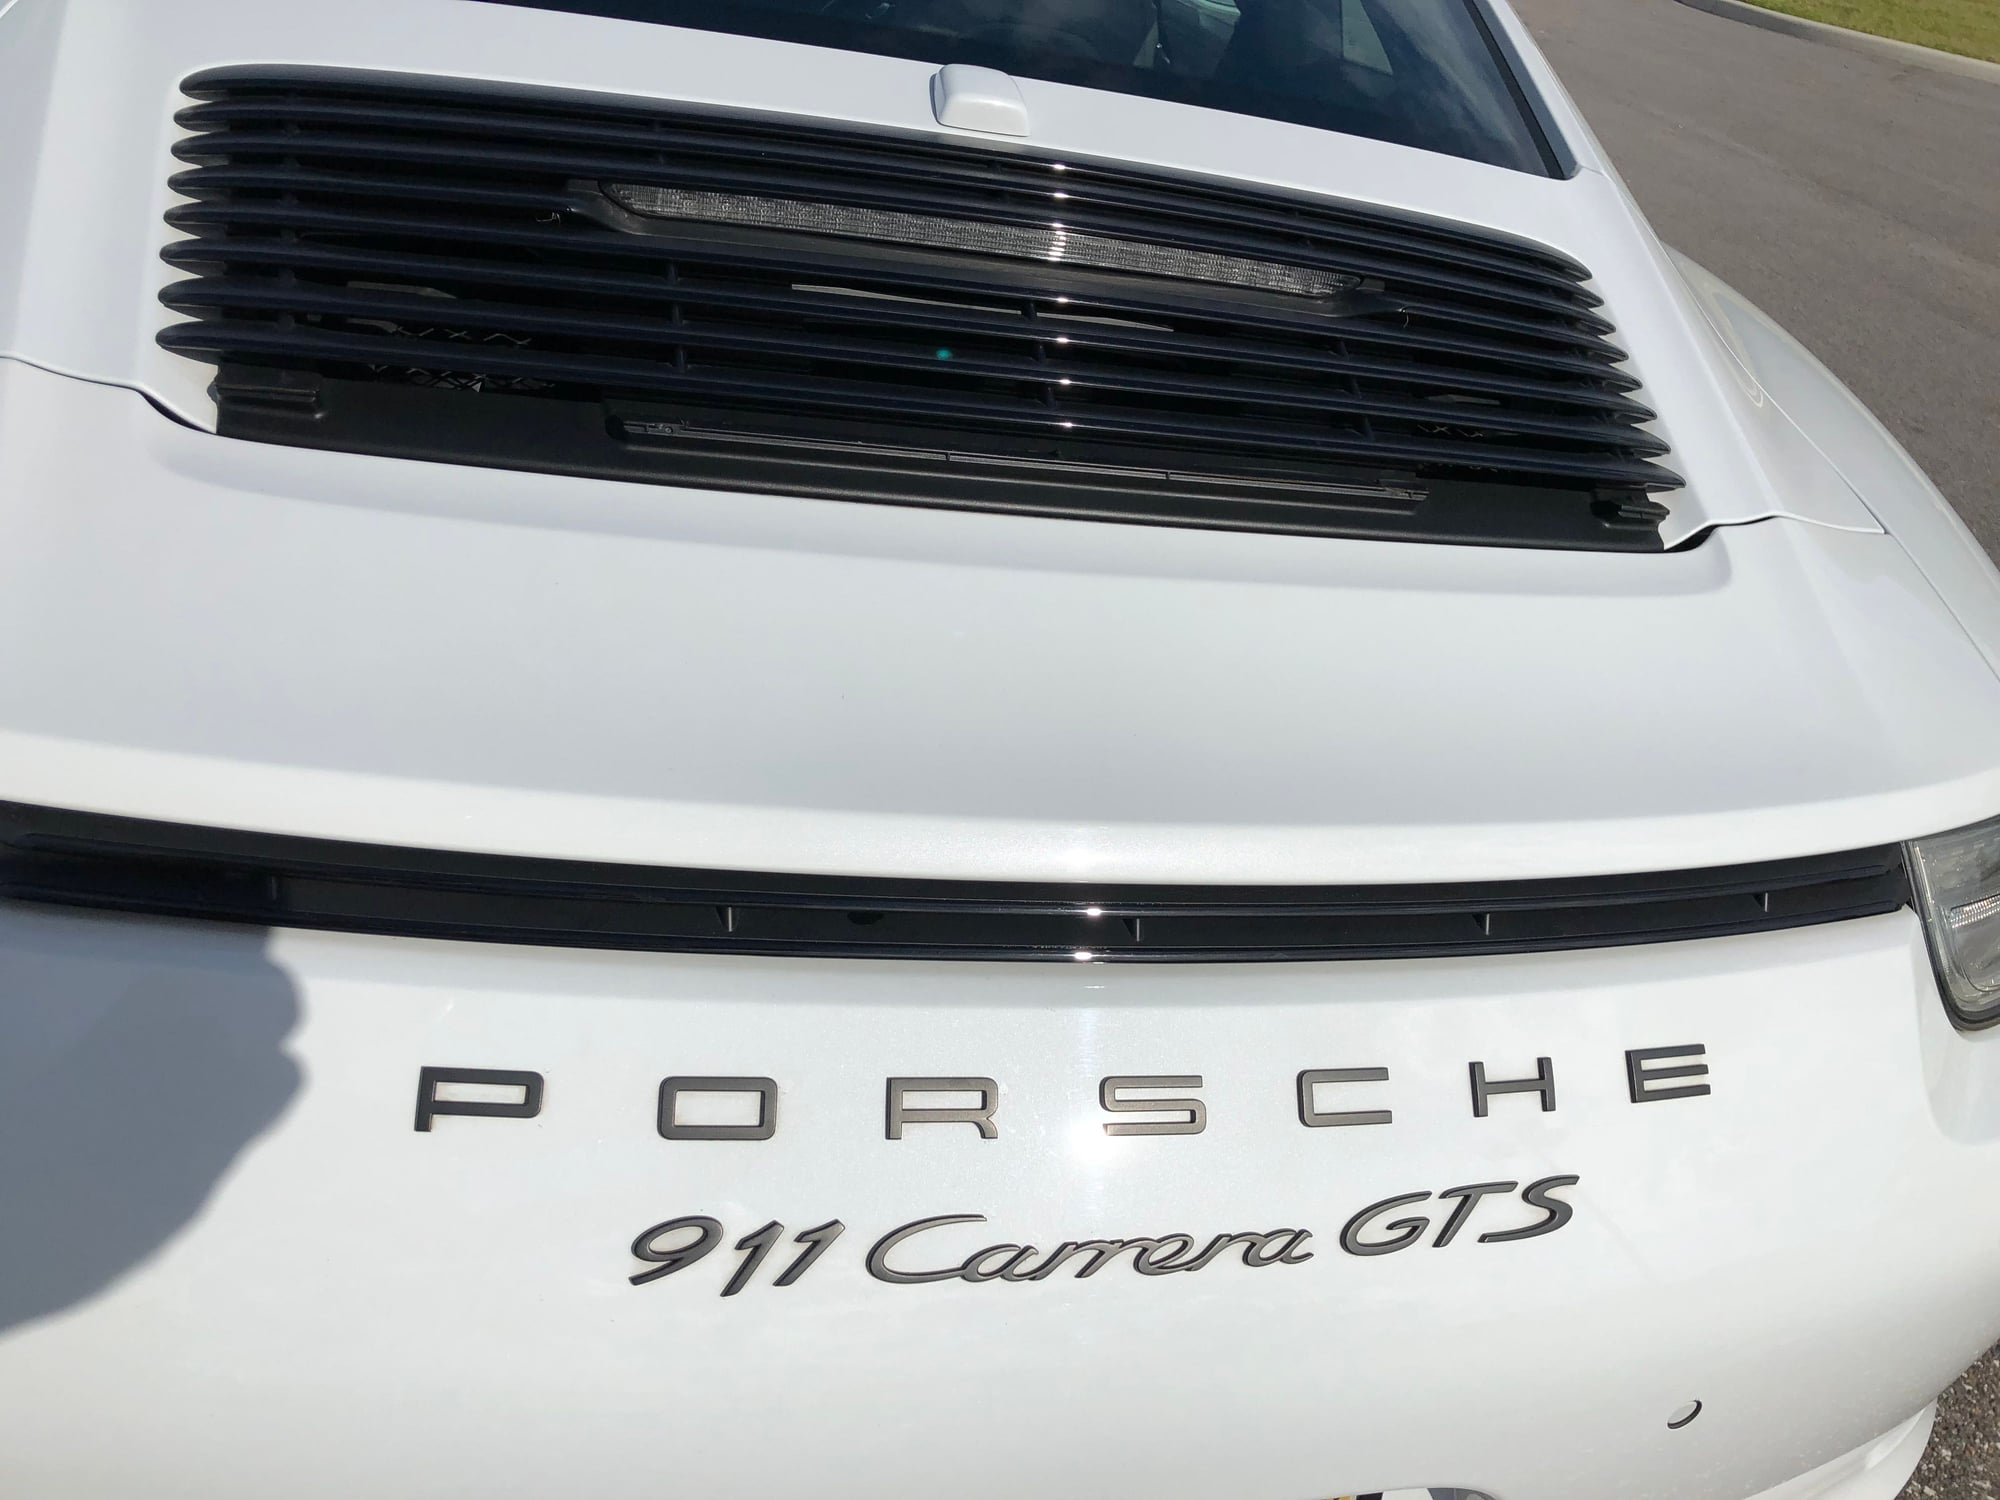 2015 Porsche 911 - 2015 Porsche 911 Carrera GTS PDK Carrera White - CPO - Used - VIN WP0AB2A92FS125778 - 14,500 Miles - 6 cyl - 2WD - Automatic - Coupe - White - Tampa, FL 33601, United States